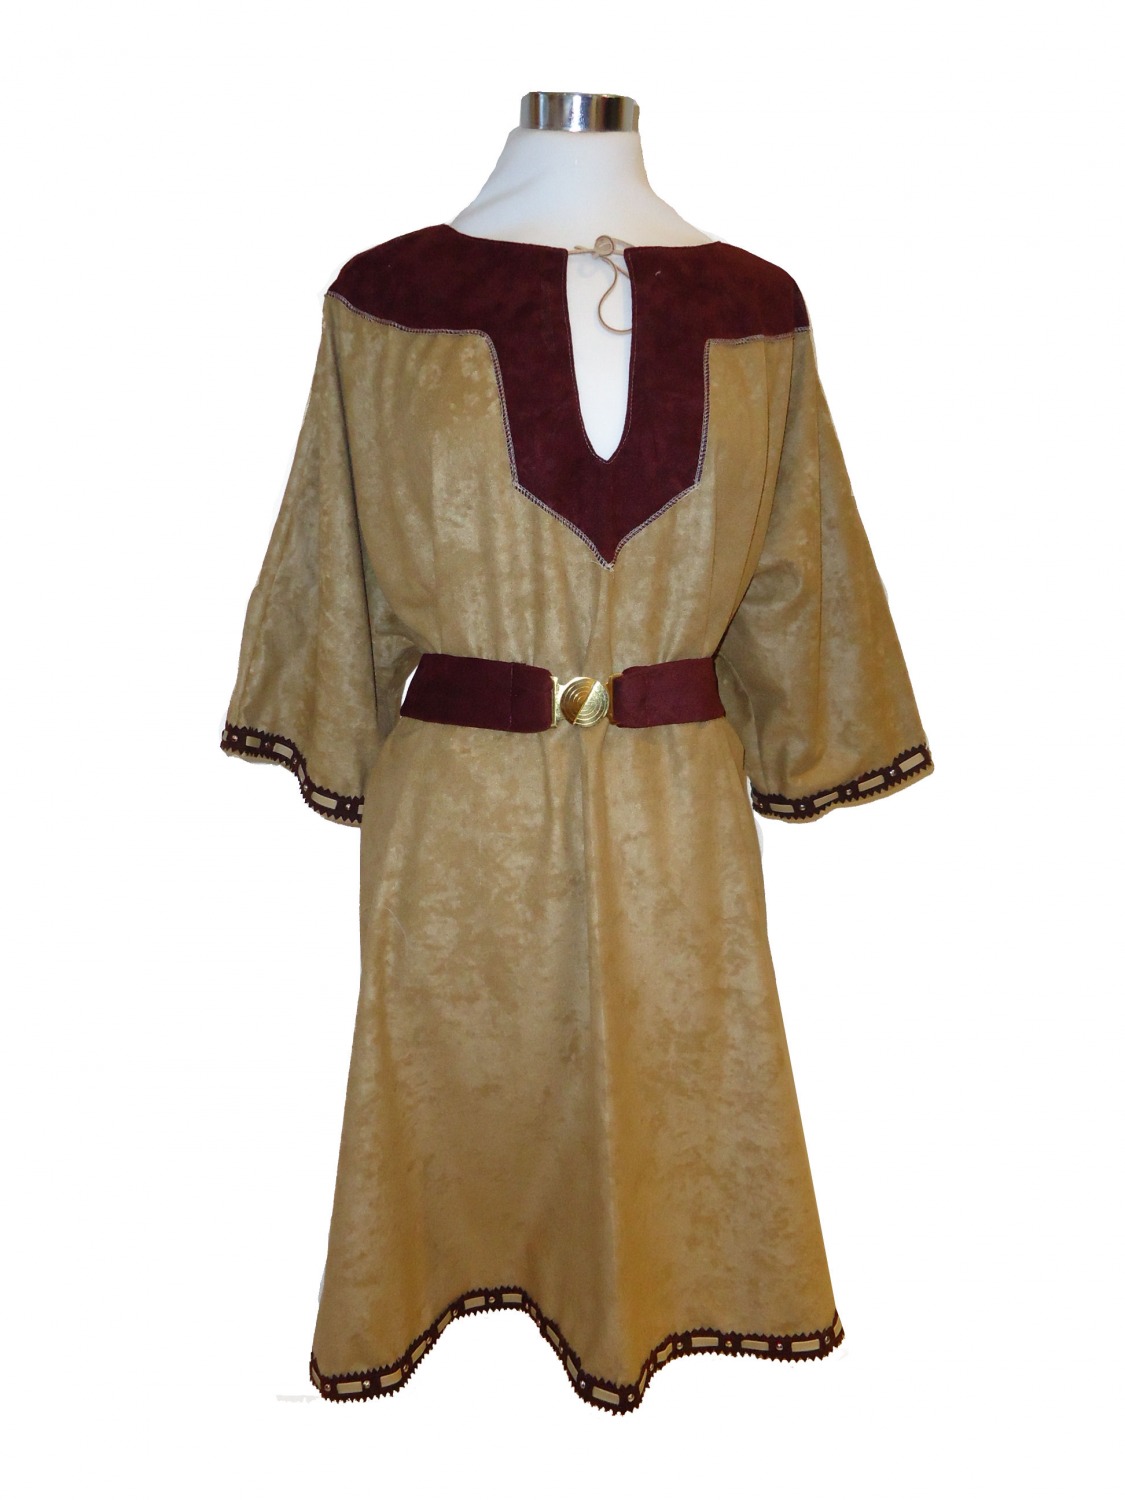 Men's Saxon Costume Image